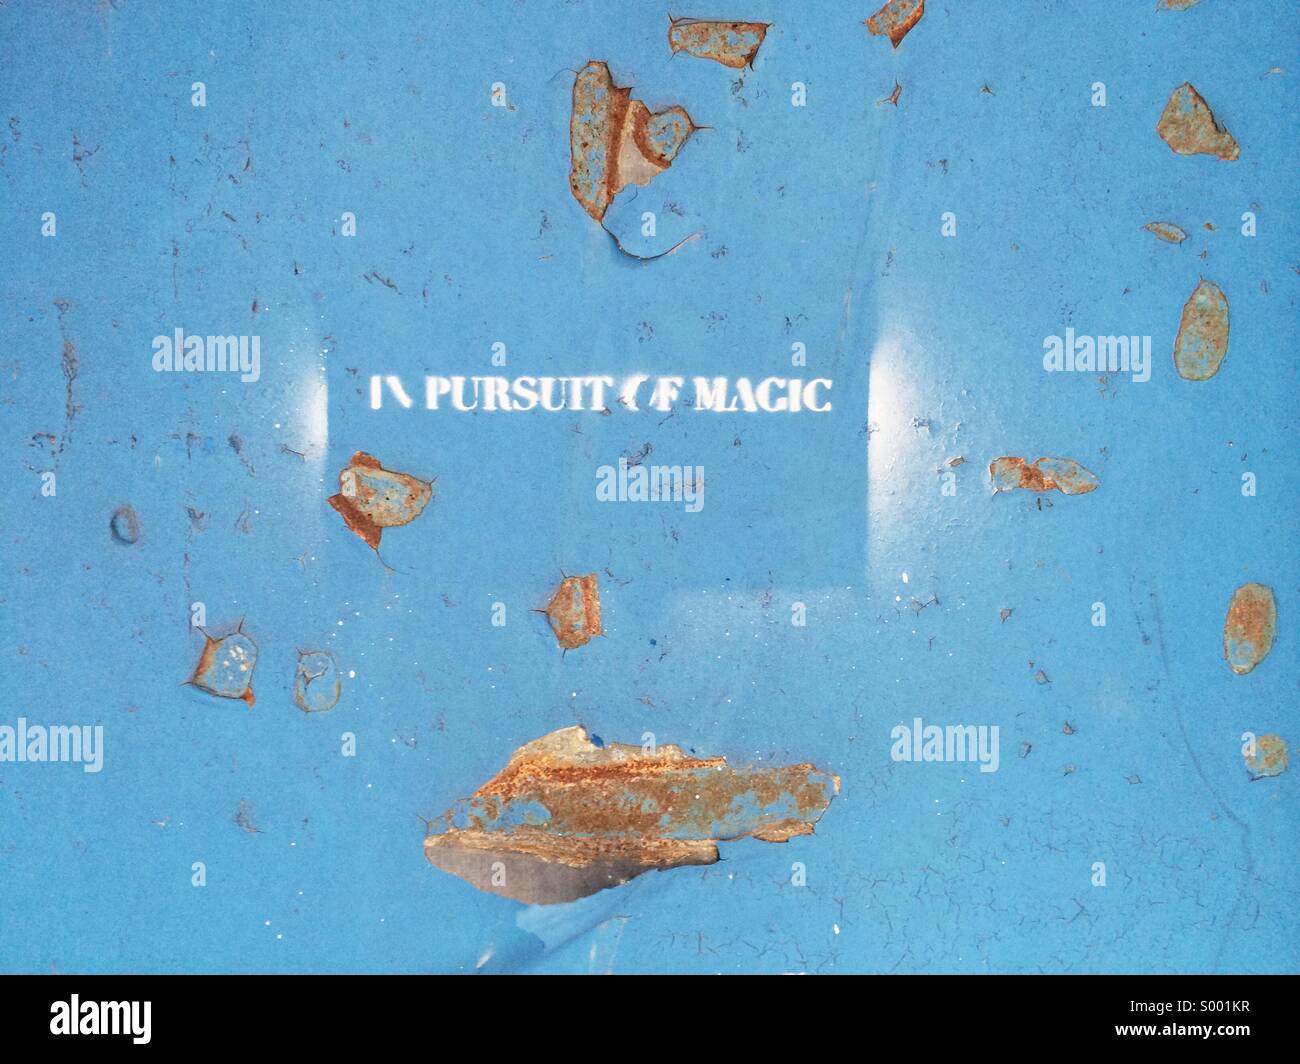 In pursuit of magic Stock Photo